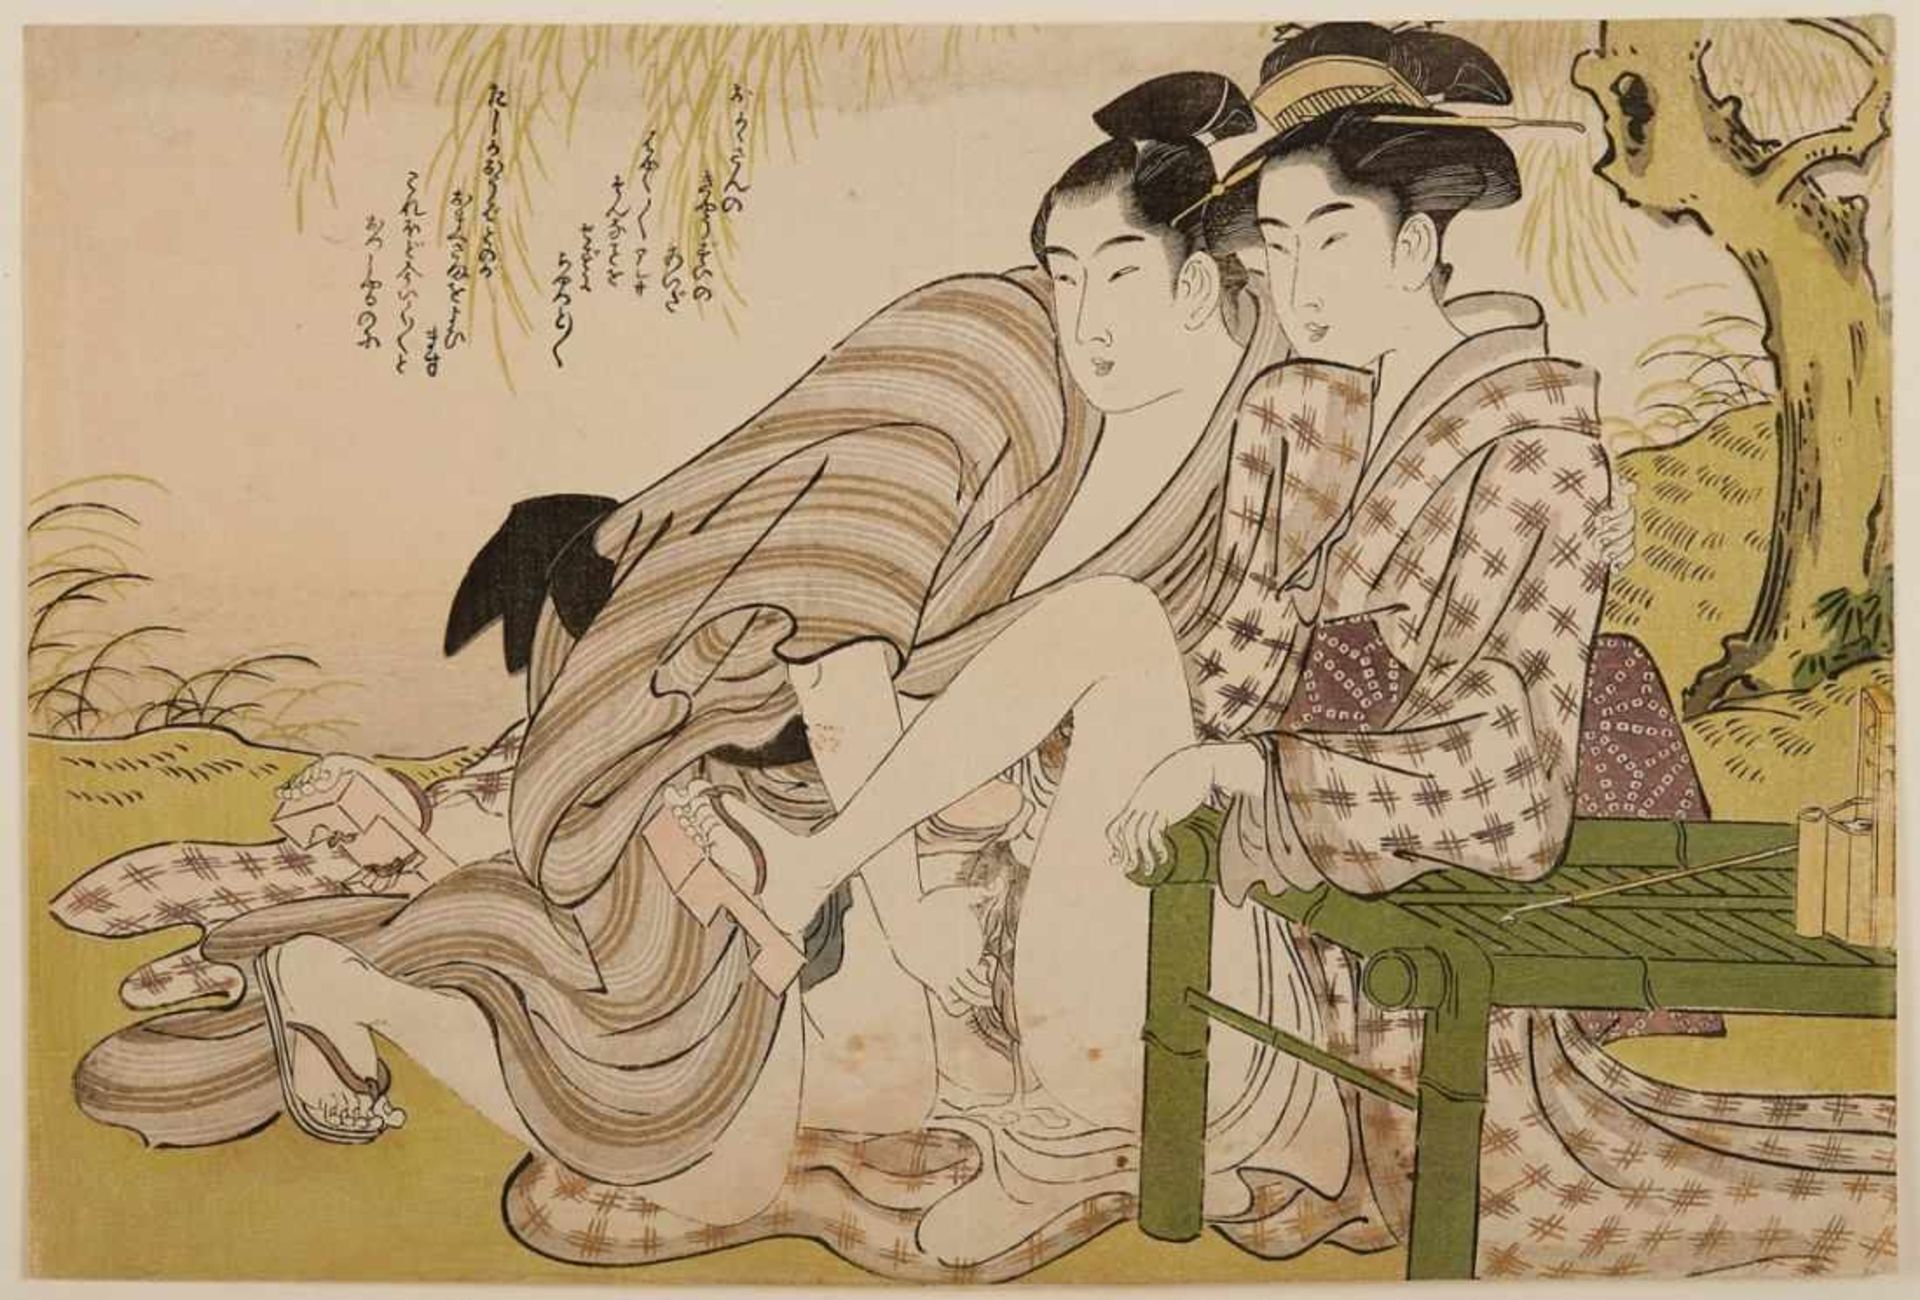 2 Farbholzschnitte Utamaro Kitawaga1753 - 1806 "Shunga" 21 x 26,4 und 21,5 x 31,8 cm, o. R. - Image 3 of 3